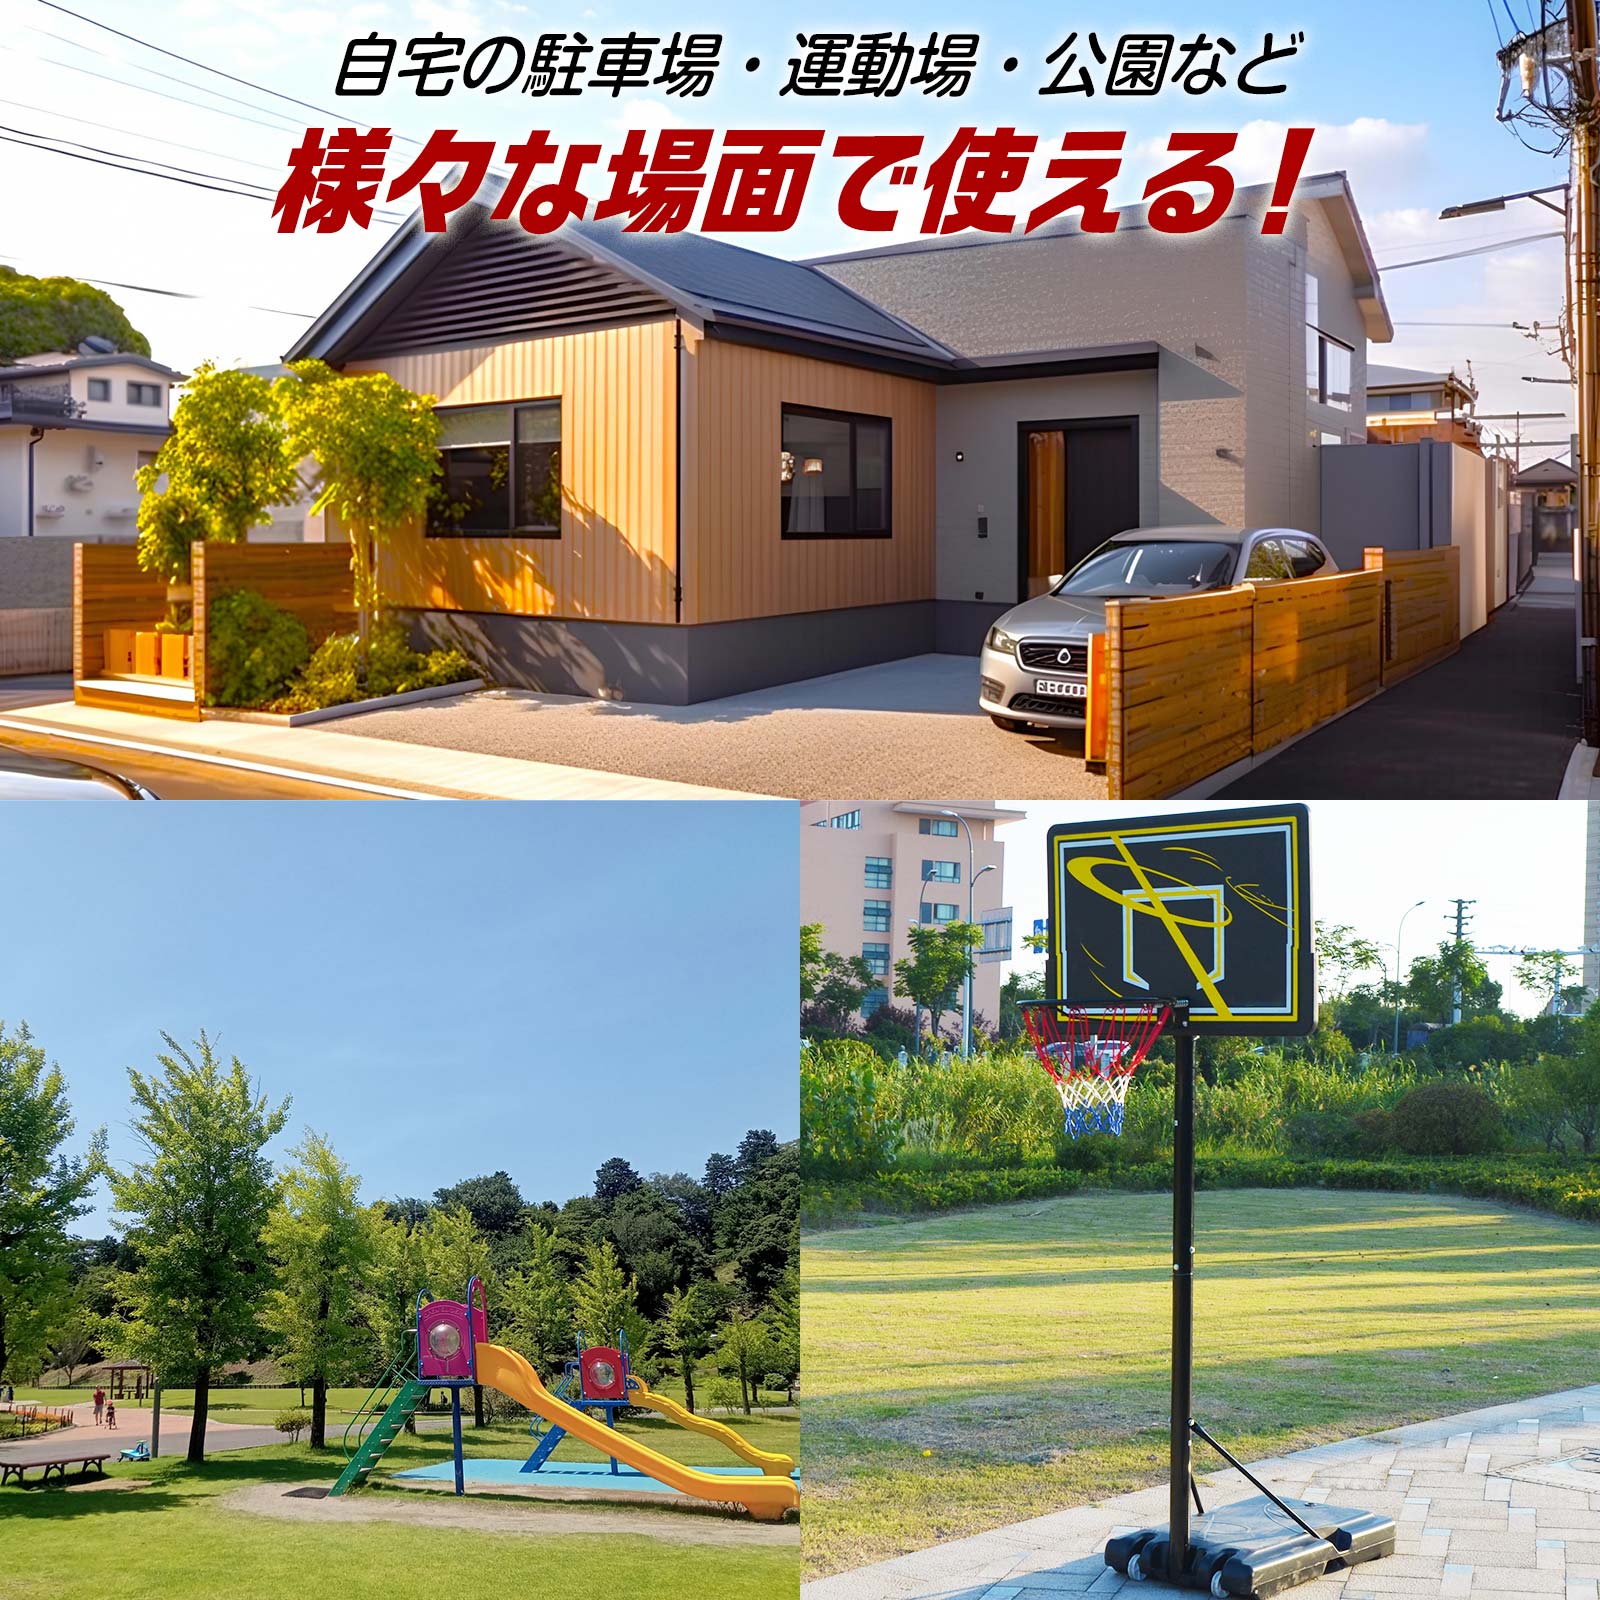 バスケットゴール 屋外 移動式 家庭用 庭 バスケットボール XLEAT 